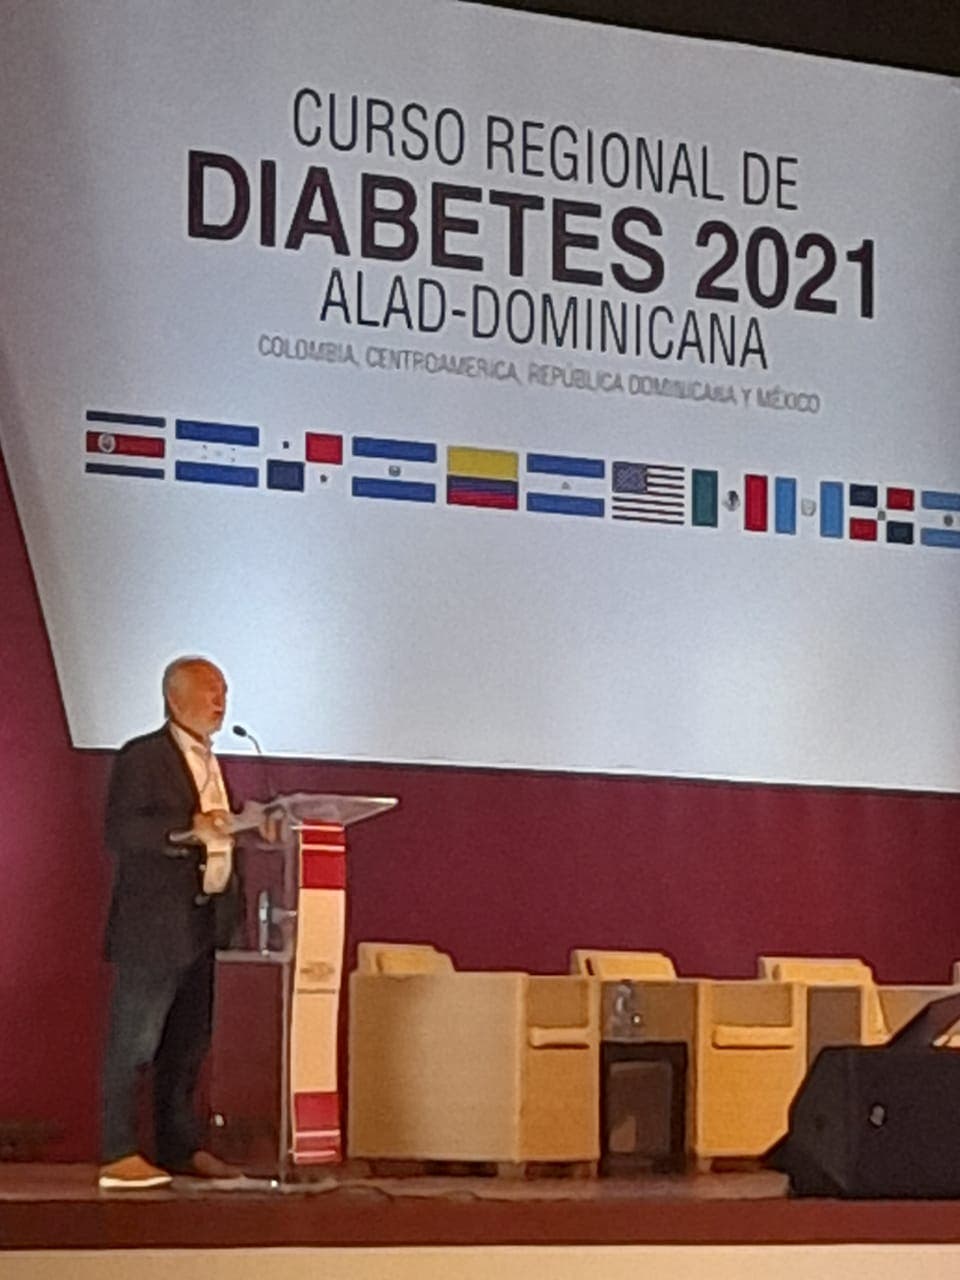 Medicamentos para diabetes y obesidad, novedad presentada en evento científico celebrado en Punta Cana